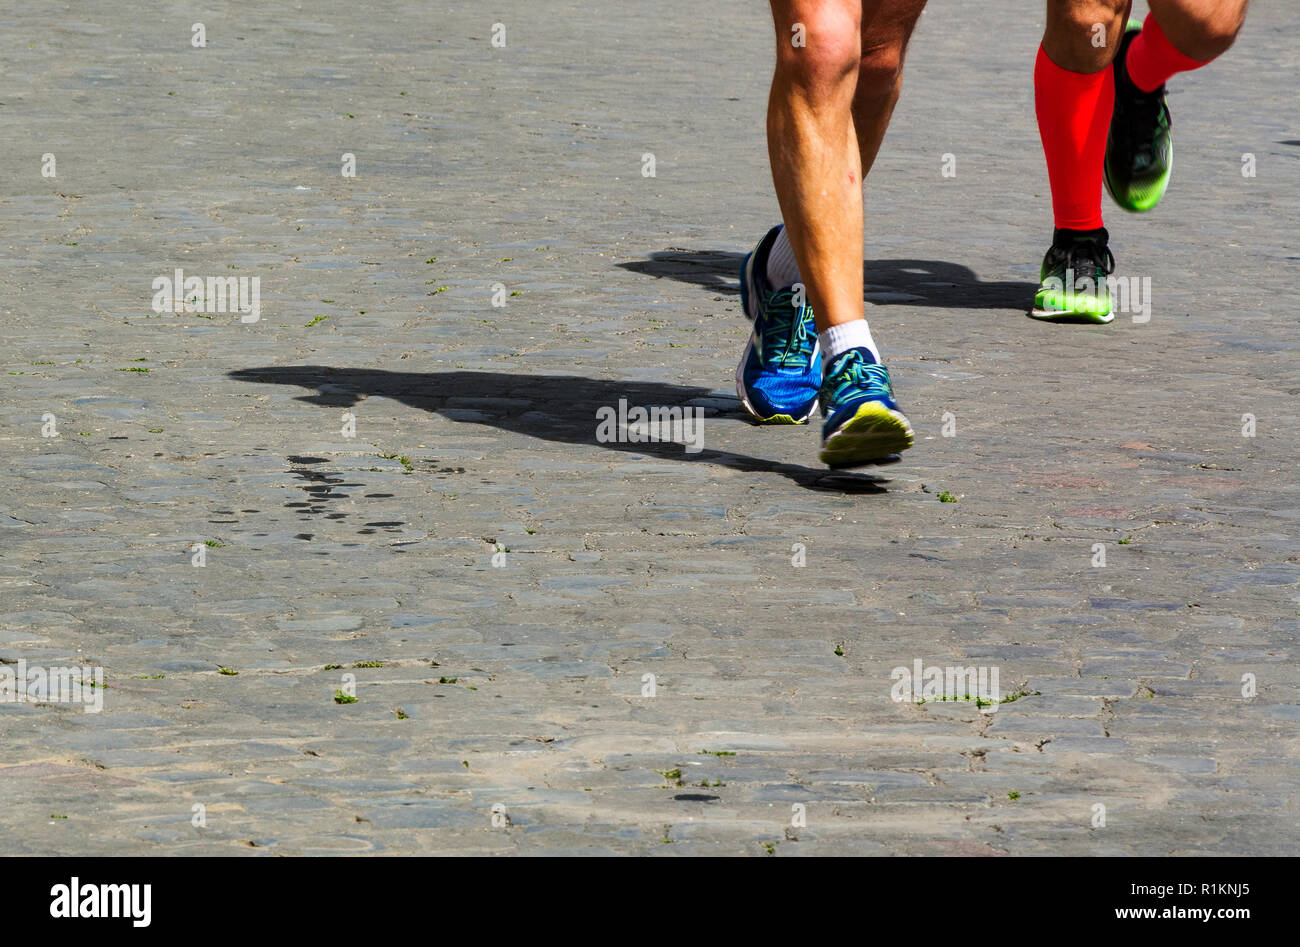 Marathon race, peuple pieds sur la route pavée de la ville Banque D'Images